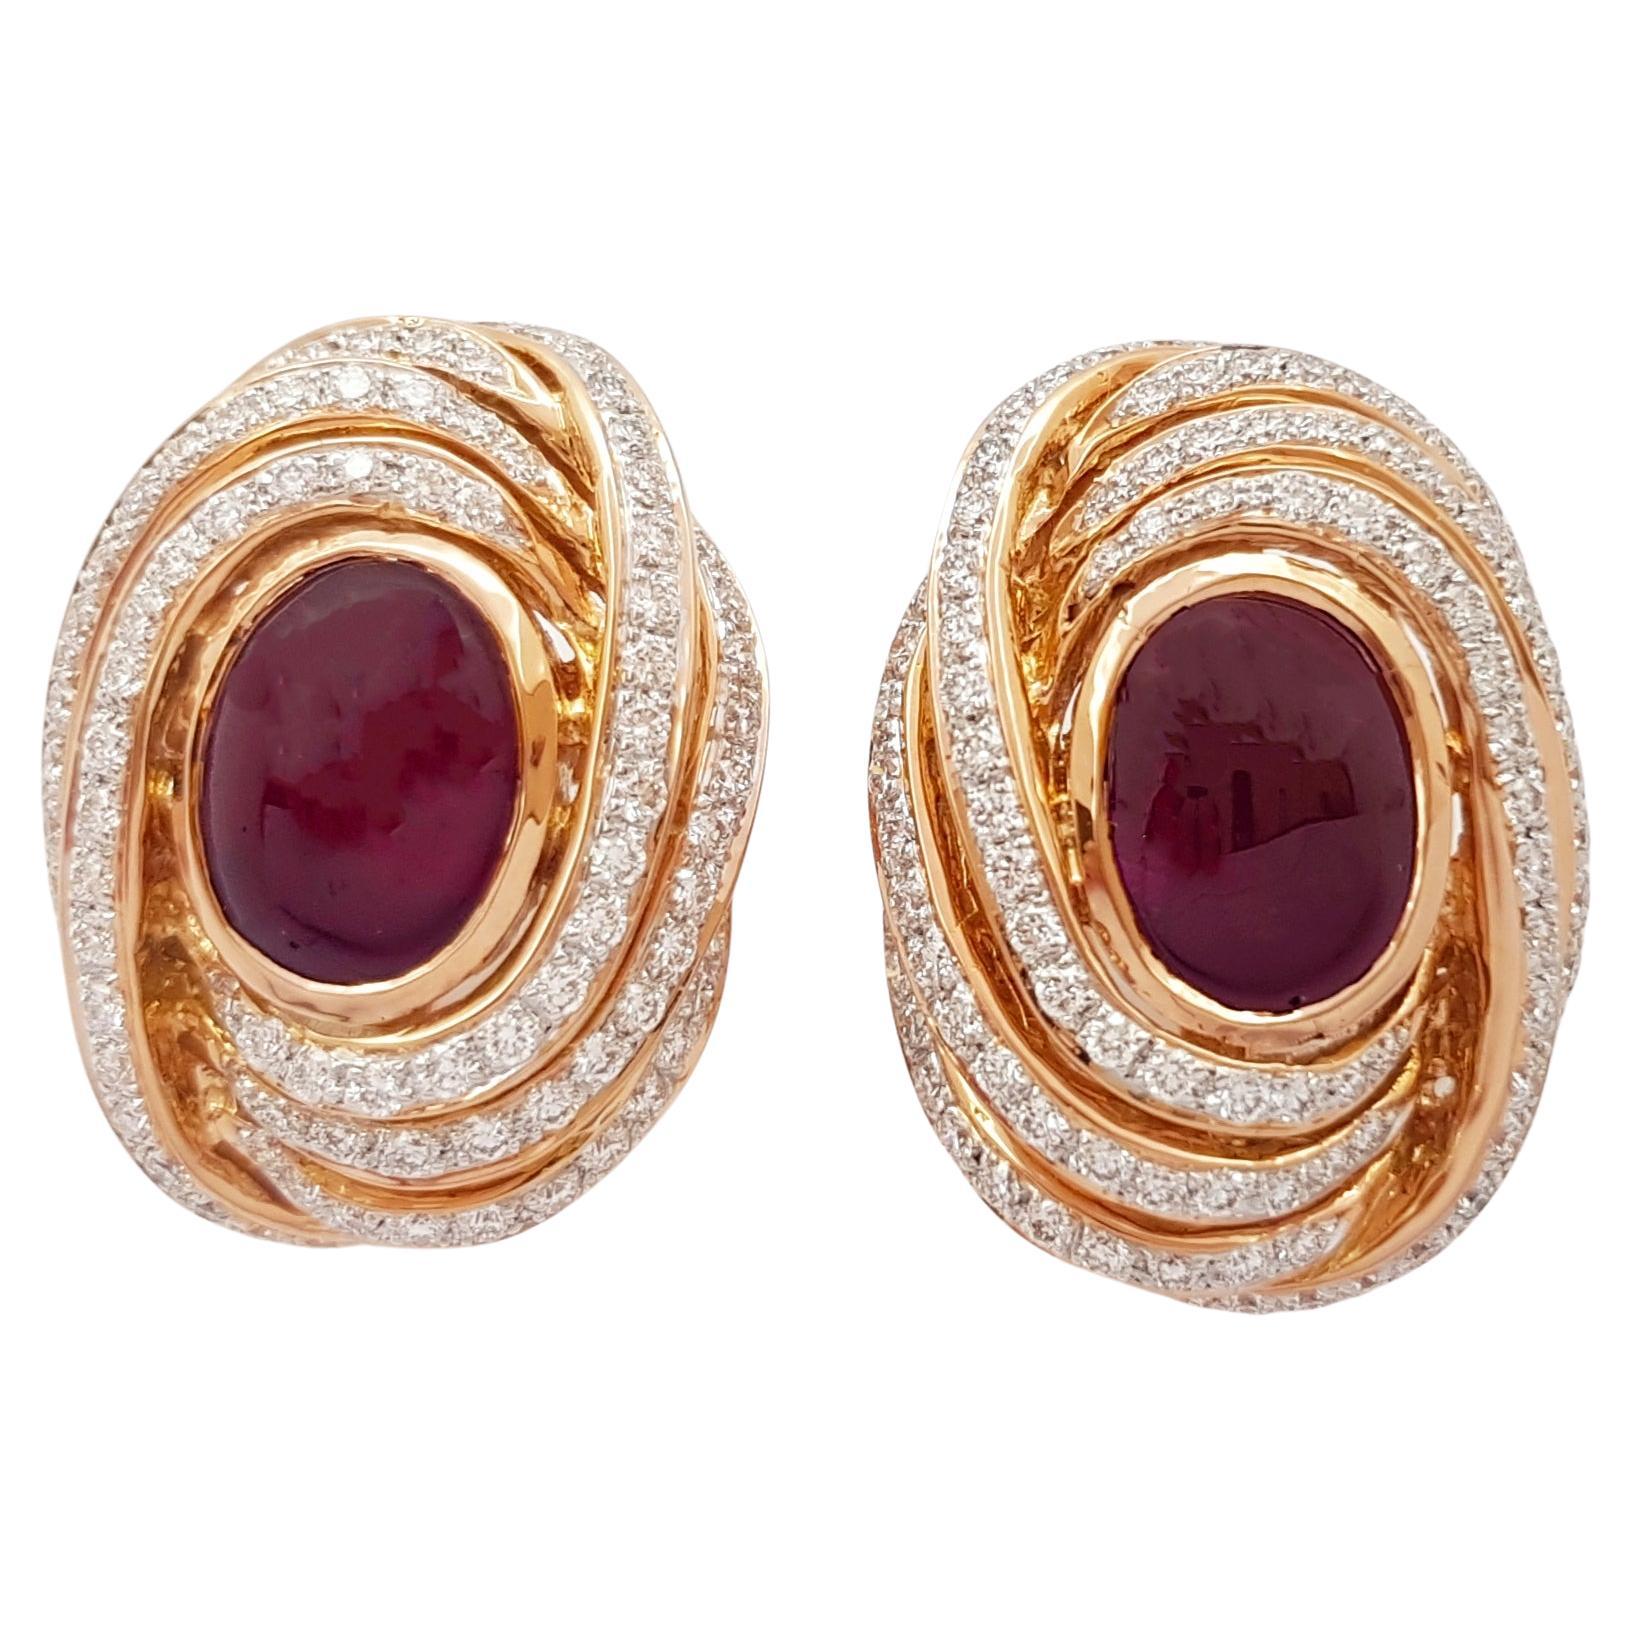 Ohrringe aus 18 Karat Roségold mit Cabochon-Rubin und Diamanten in Fassungen